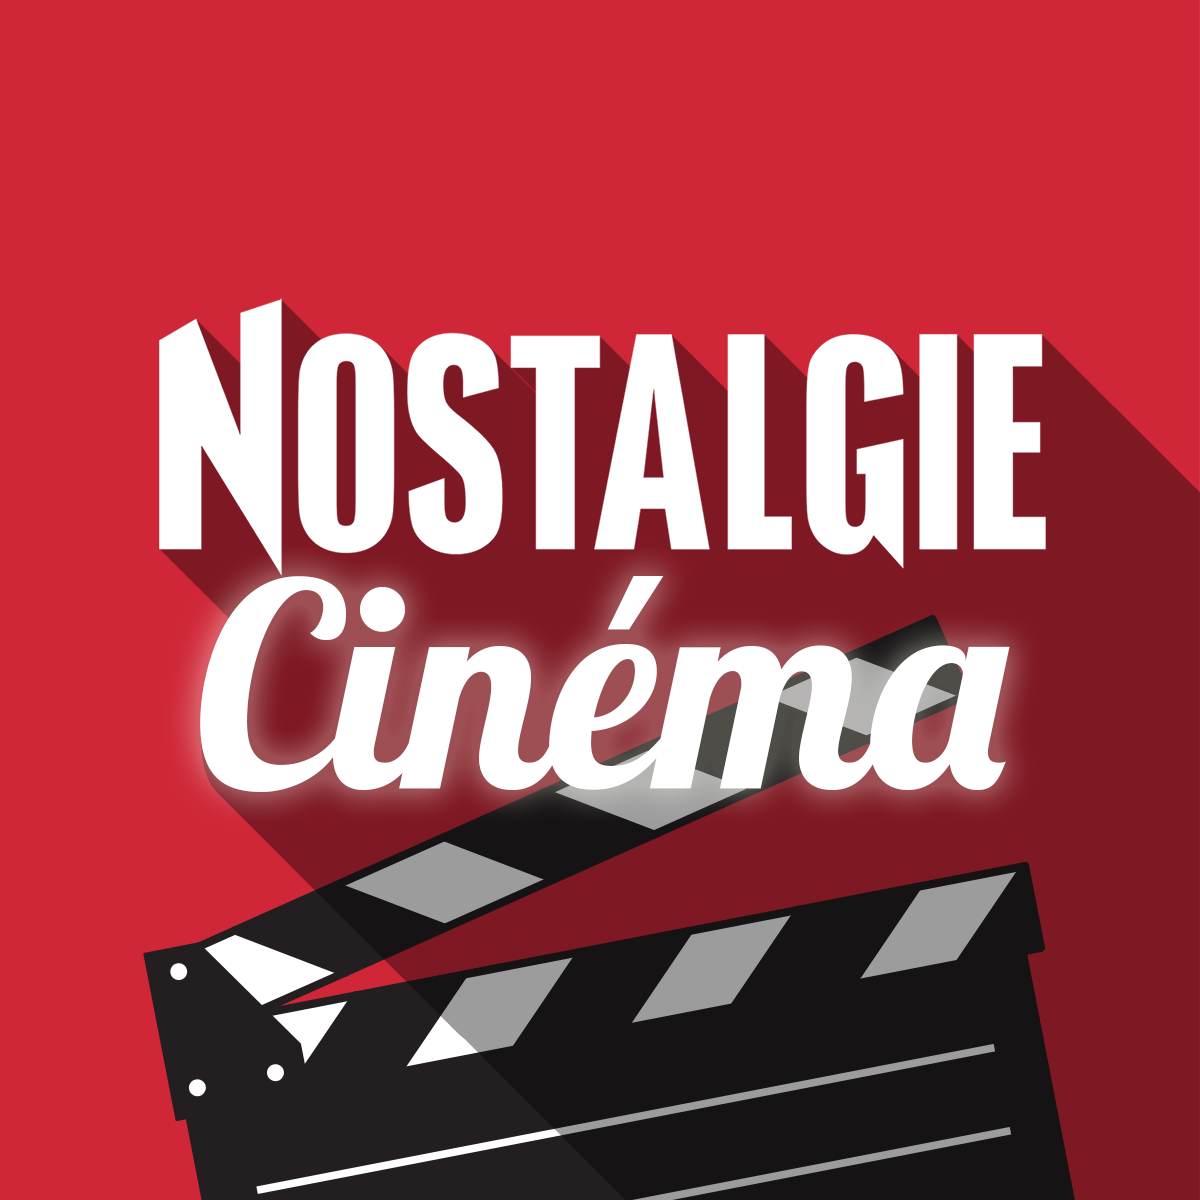 Nostalgie cinéma - logo webradio